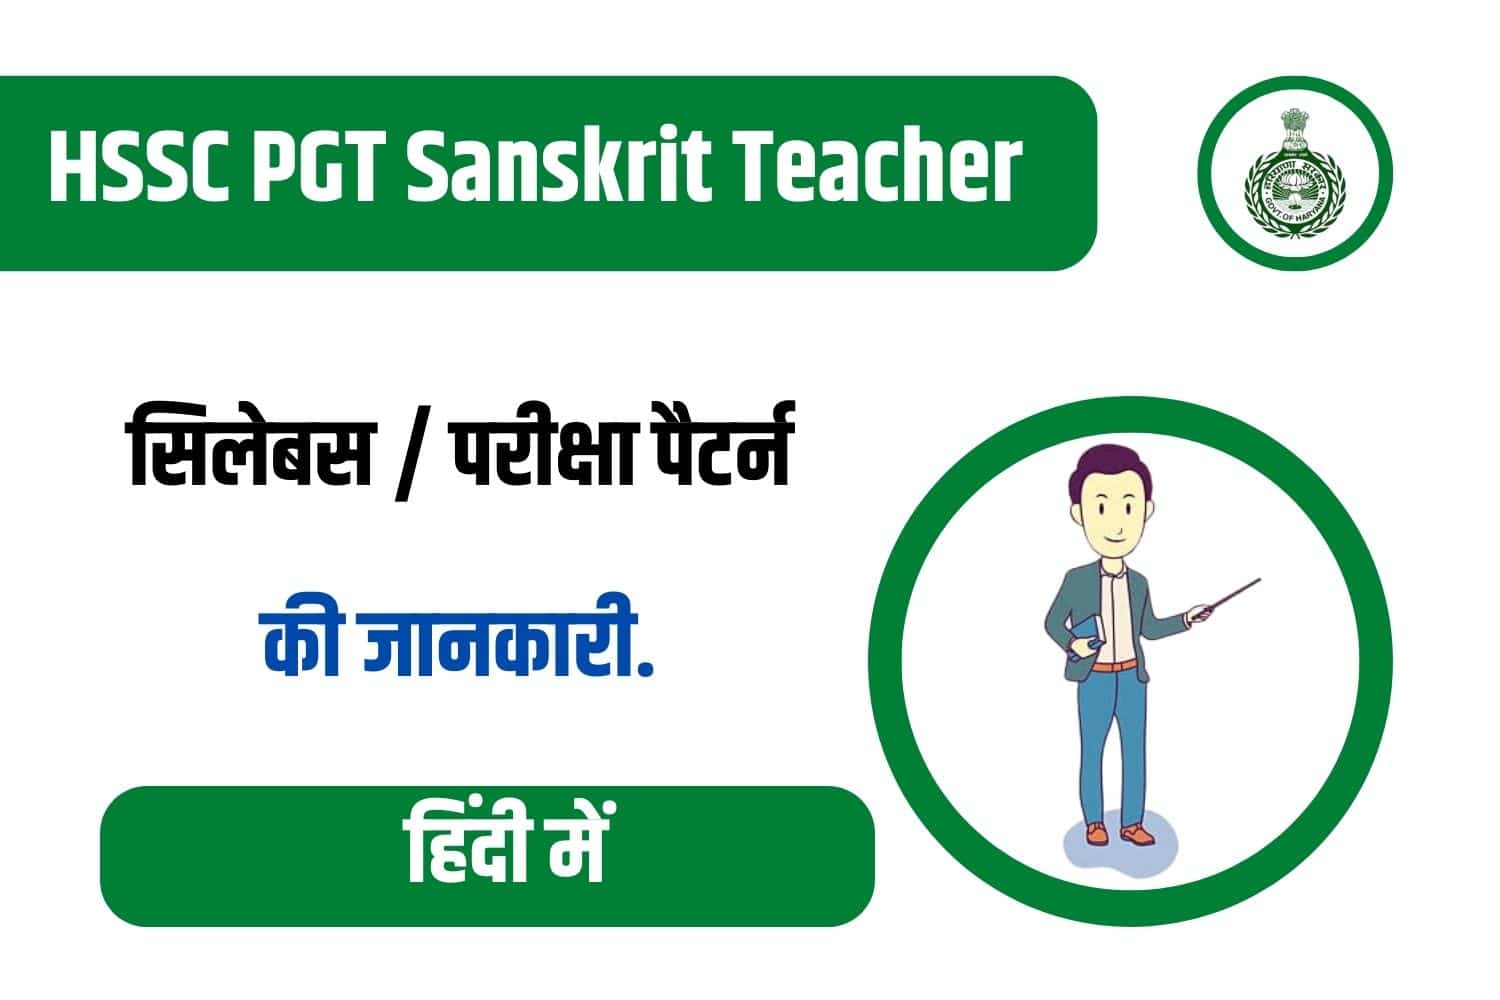 HSSC PGT Sanskrit Teacher Syllabus In Hindi | हरियाणा पीजीटी संस्कृत सिलेबस इन हिंदी